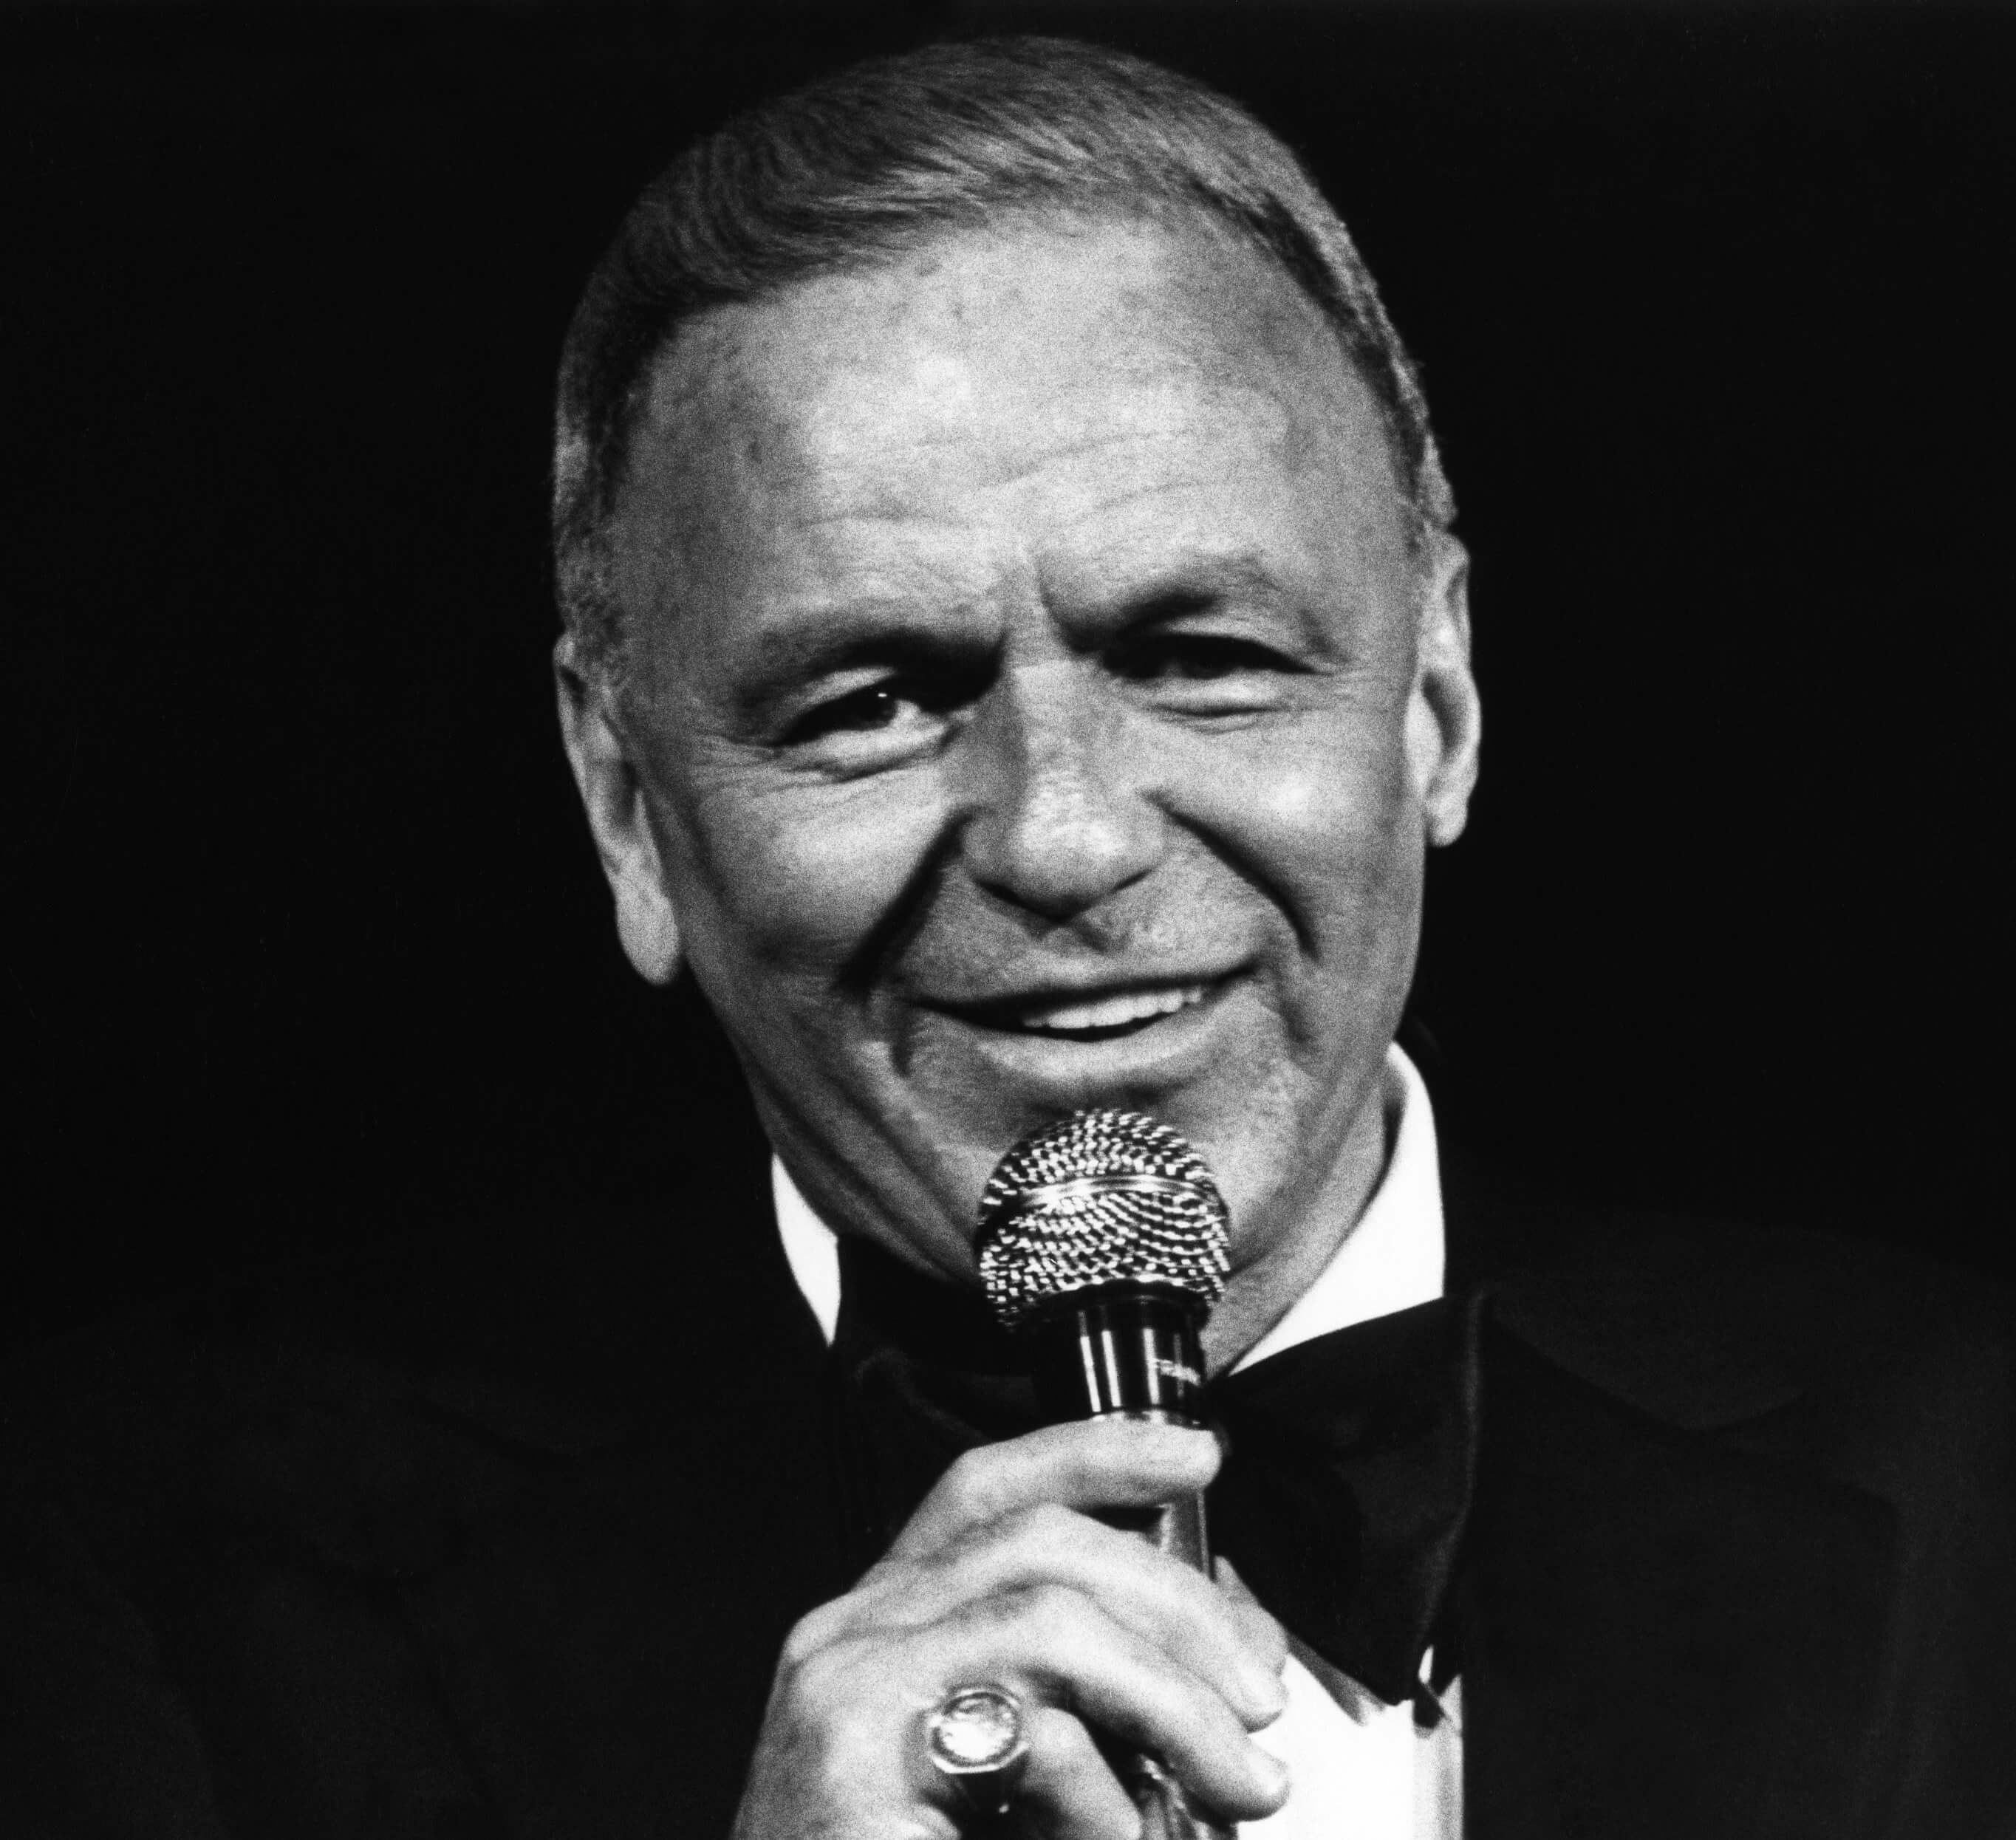 ¿Por qué Paul Anka le dio 'My Way' a Frank Sinatra?